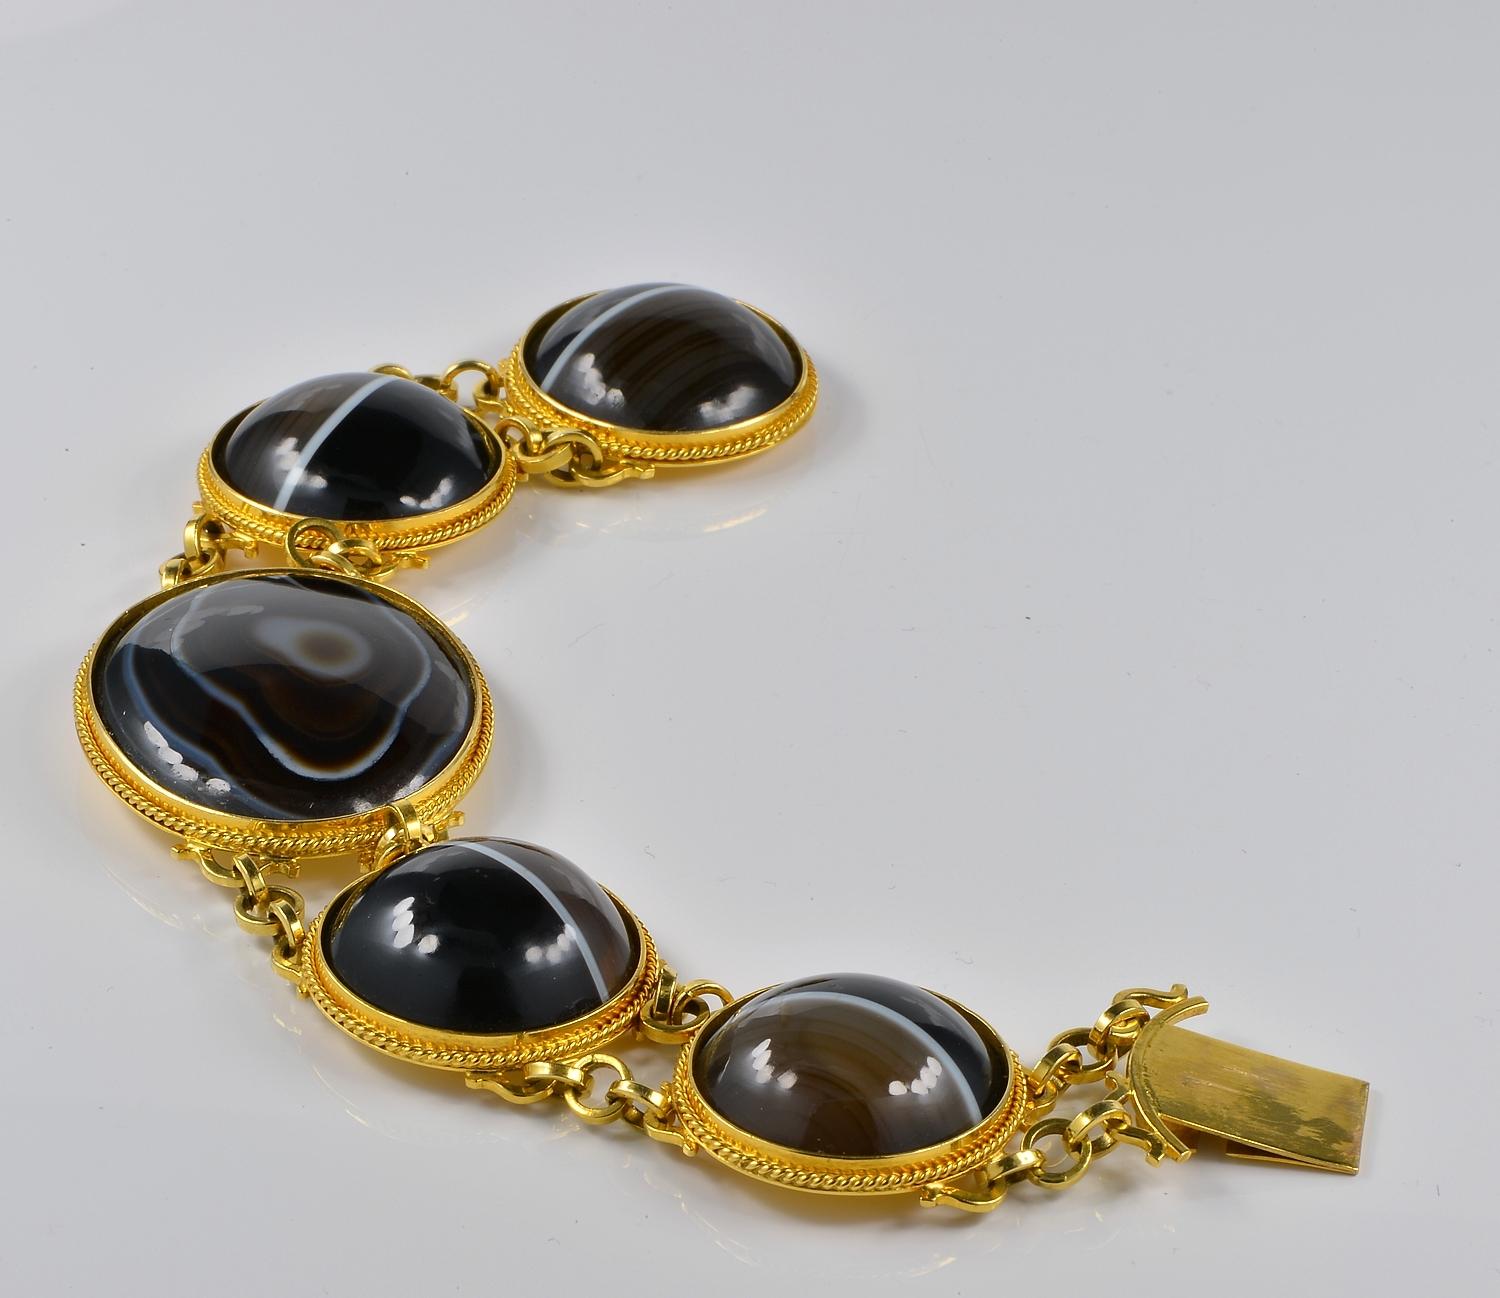 Ce magnifique bracelet est d'époque géorgienne, 1820 env.
Fabriqué à la main en or massif 18 carats
Composé de cinq grands panneaux ovales et ronds sertis de sections d'agate polie à bandes noires.
Merveilleuse exécution présentant chaque panneau